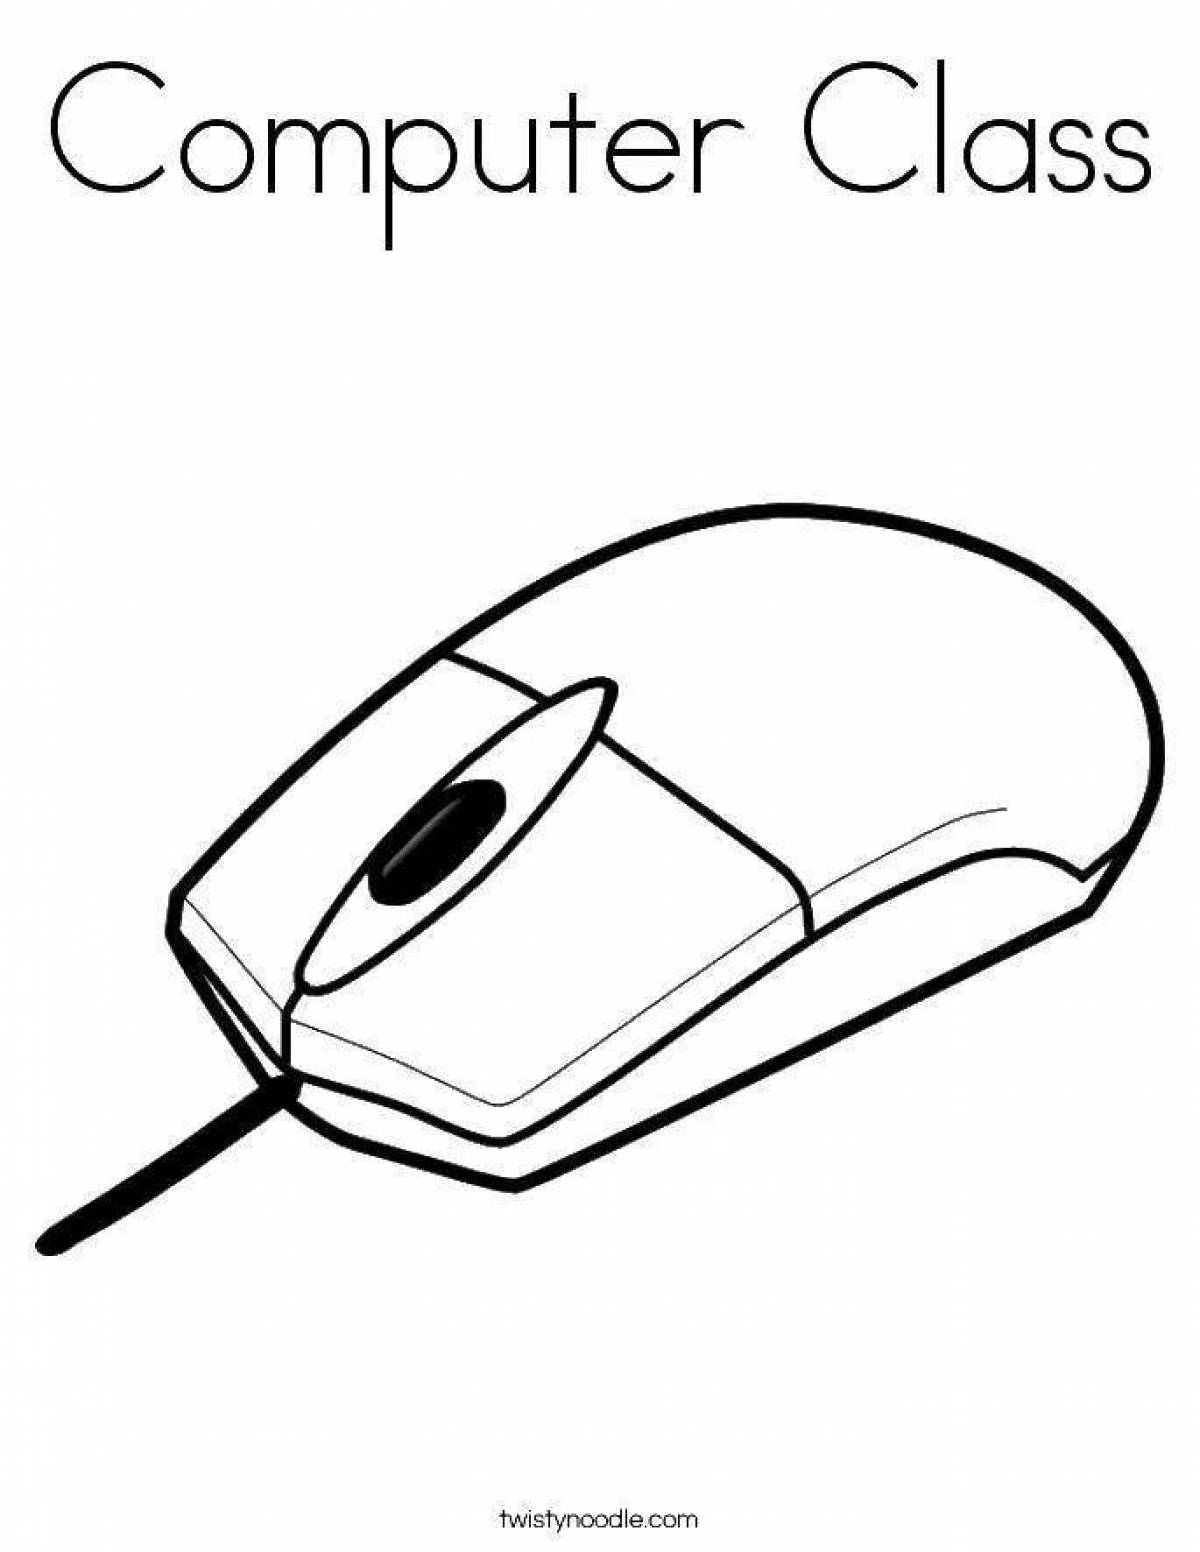 Мышка компьютерная #14